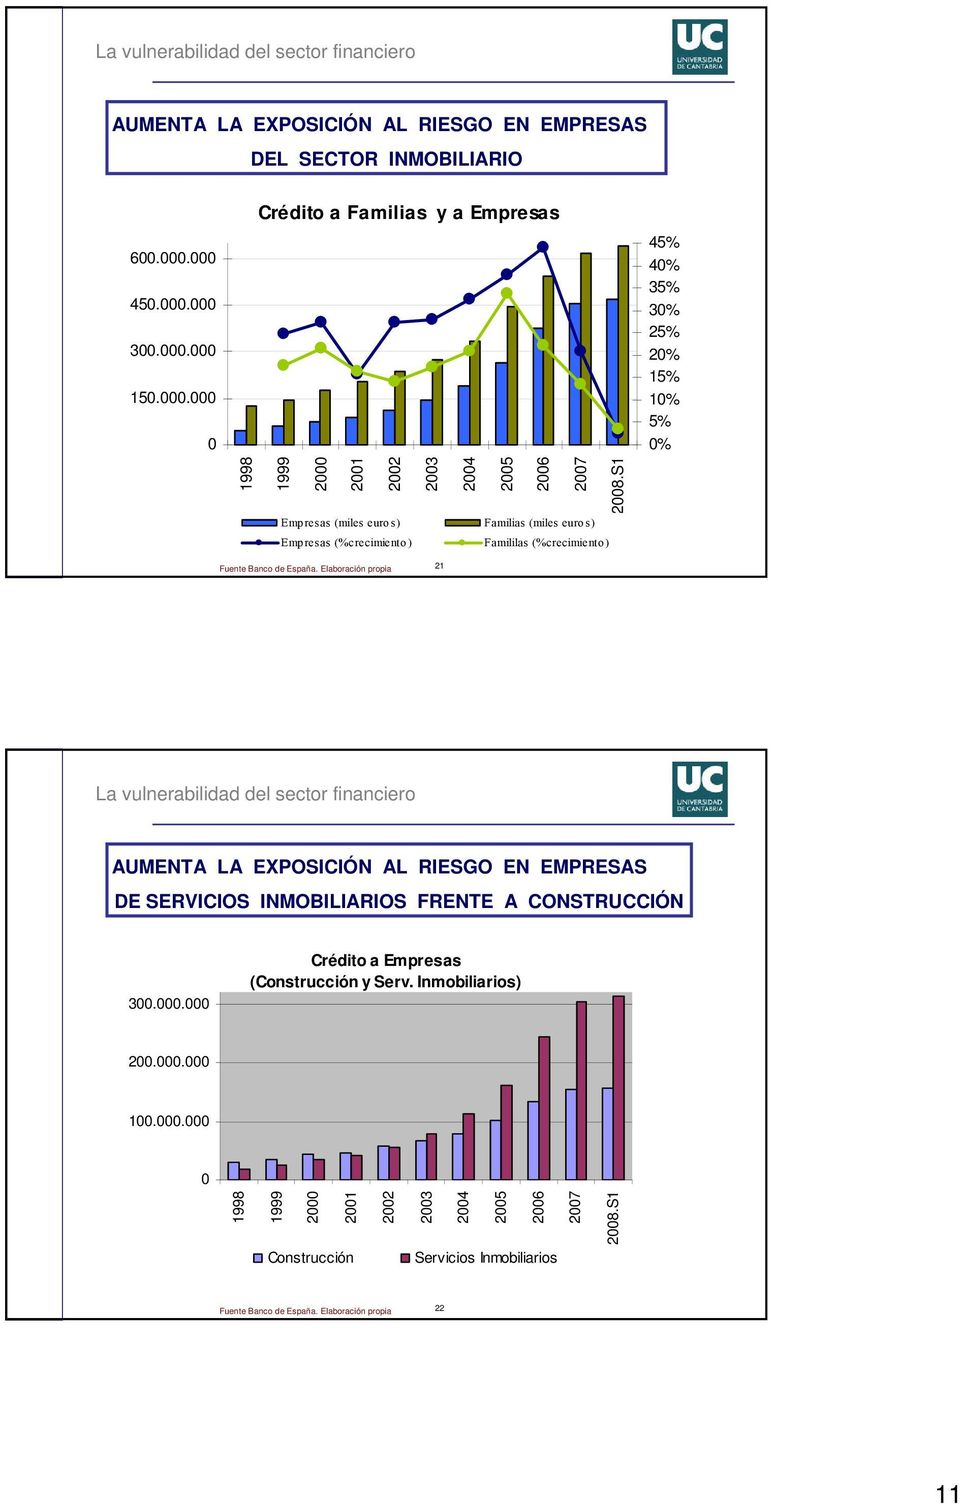 S1 Empresas (miles euros) Familias (miles euros) Empresas (% crecimiento ) Famililas (% crecimiento) 45% 40% 35% 30% 25% 20% 15% 10% 5% 0% Fuente Banco de España.